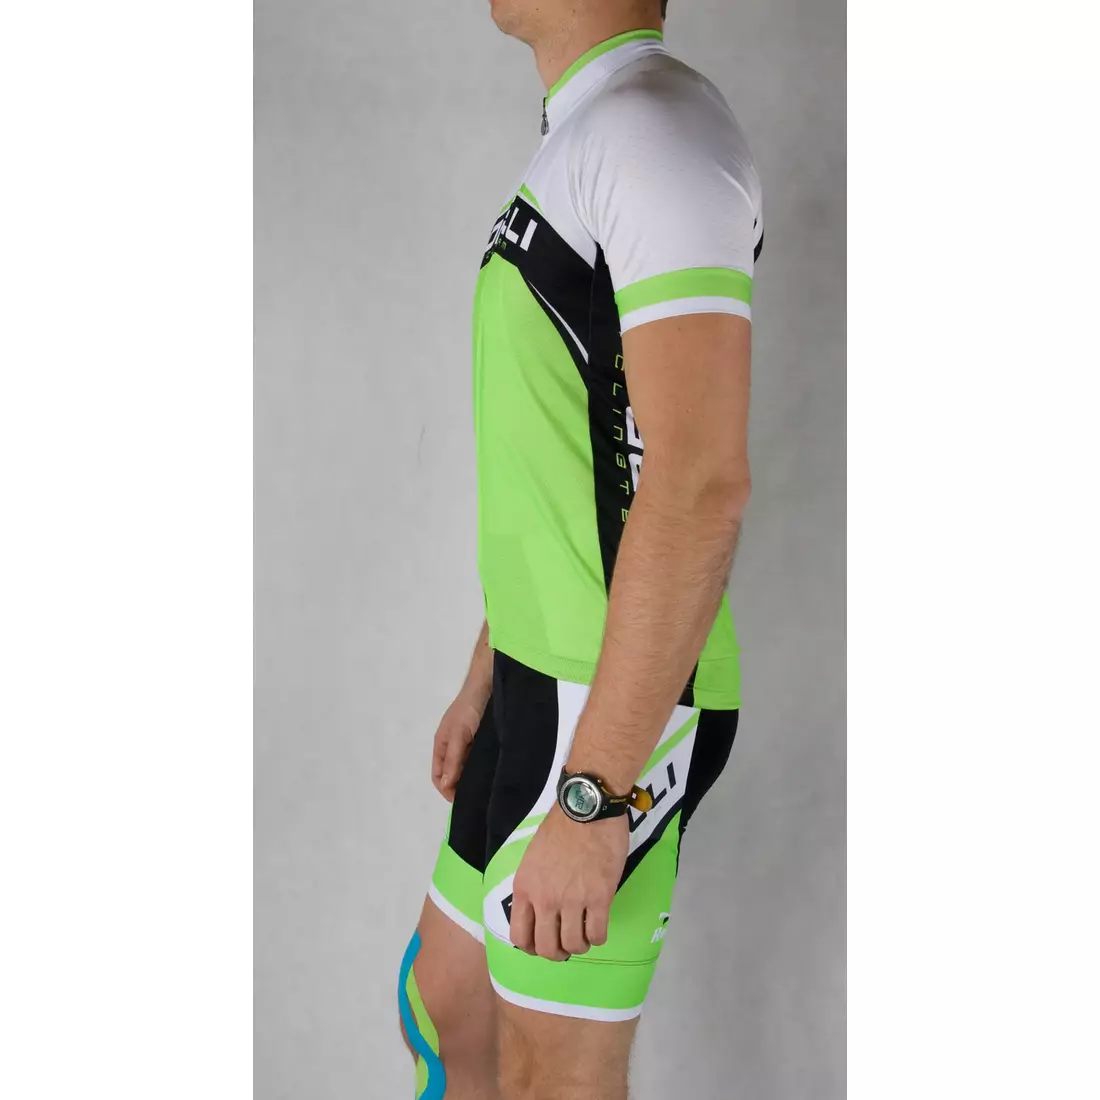 ROGELLI ANCONA - pánsky cyklistický dres, bielo-zelený